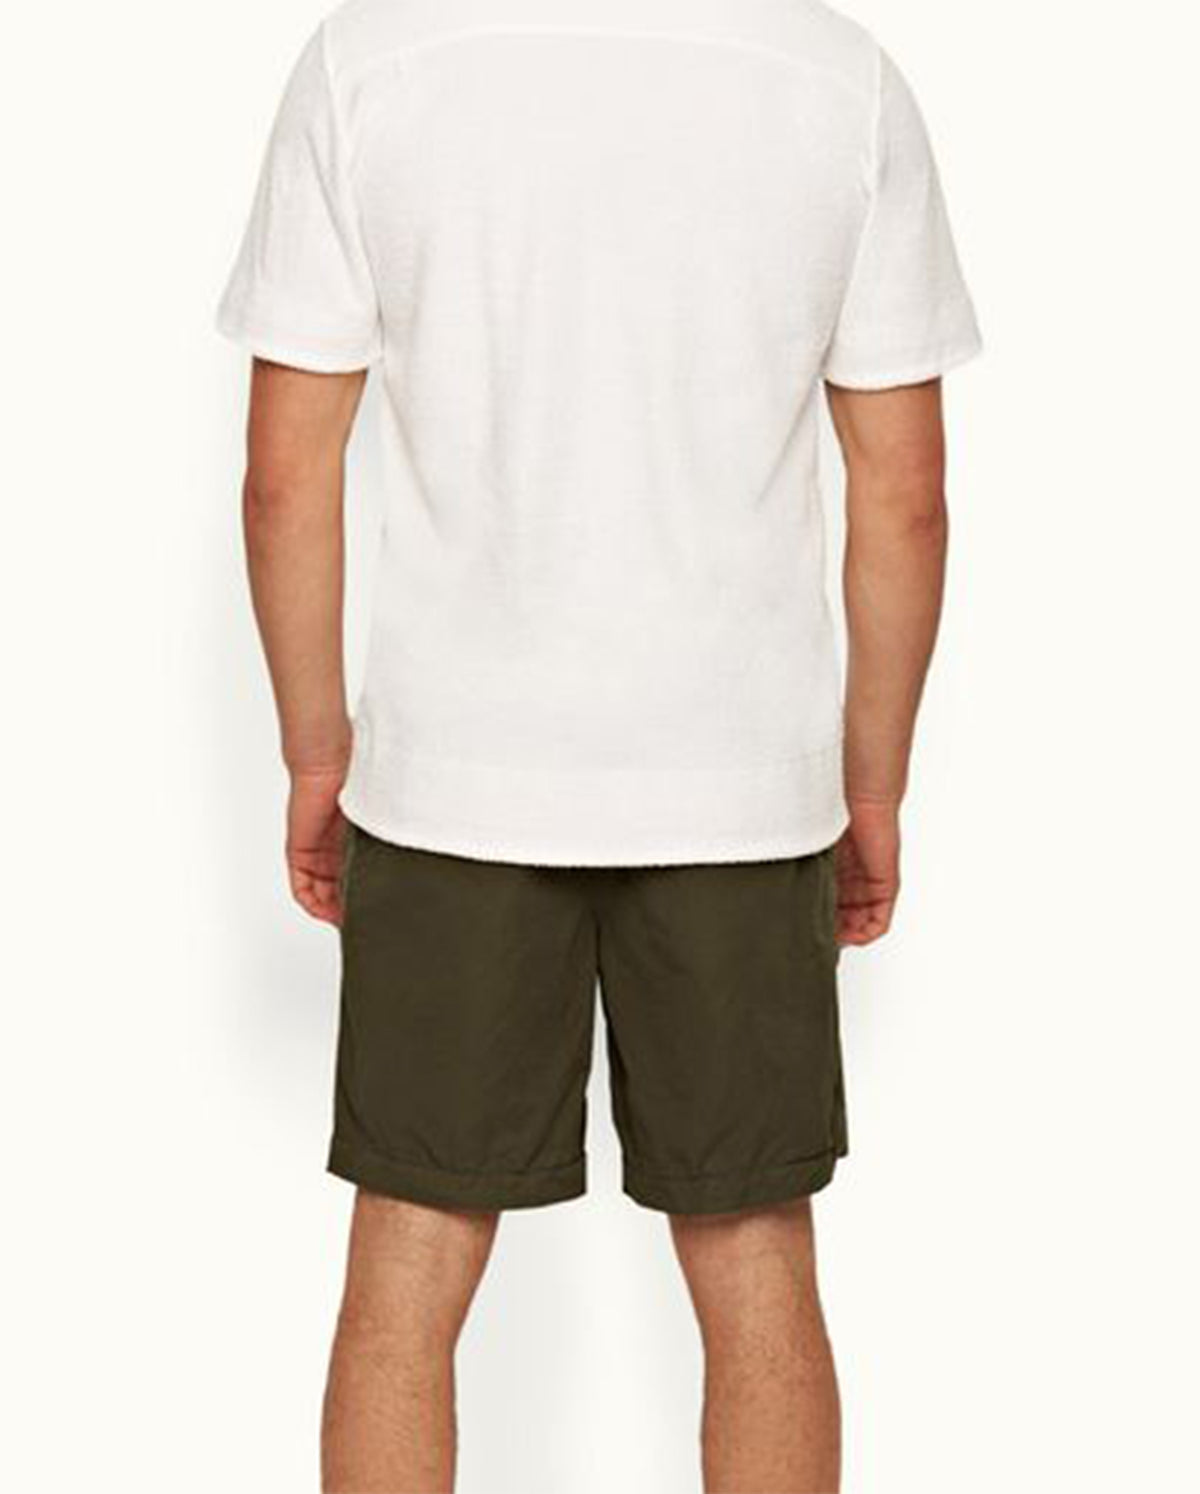 Lazar Short Sleeve Shirt - White